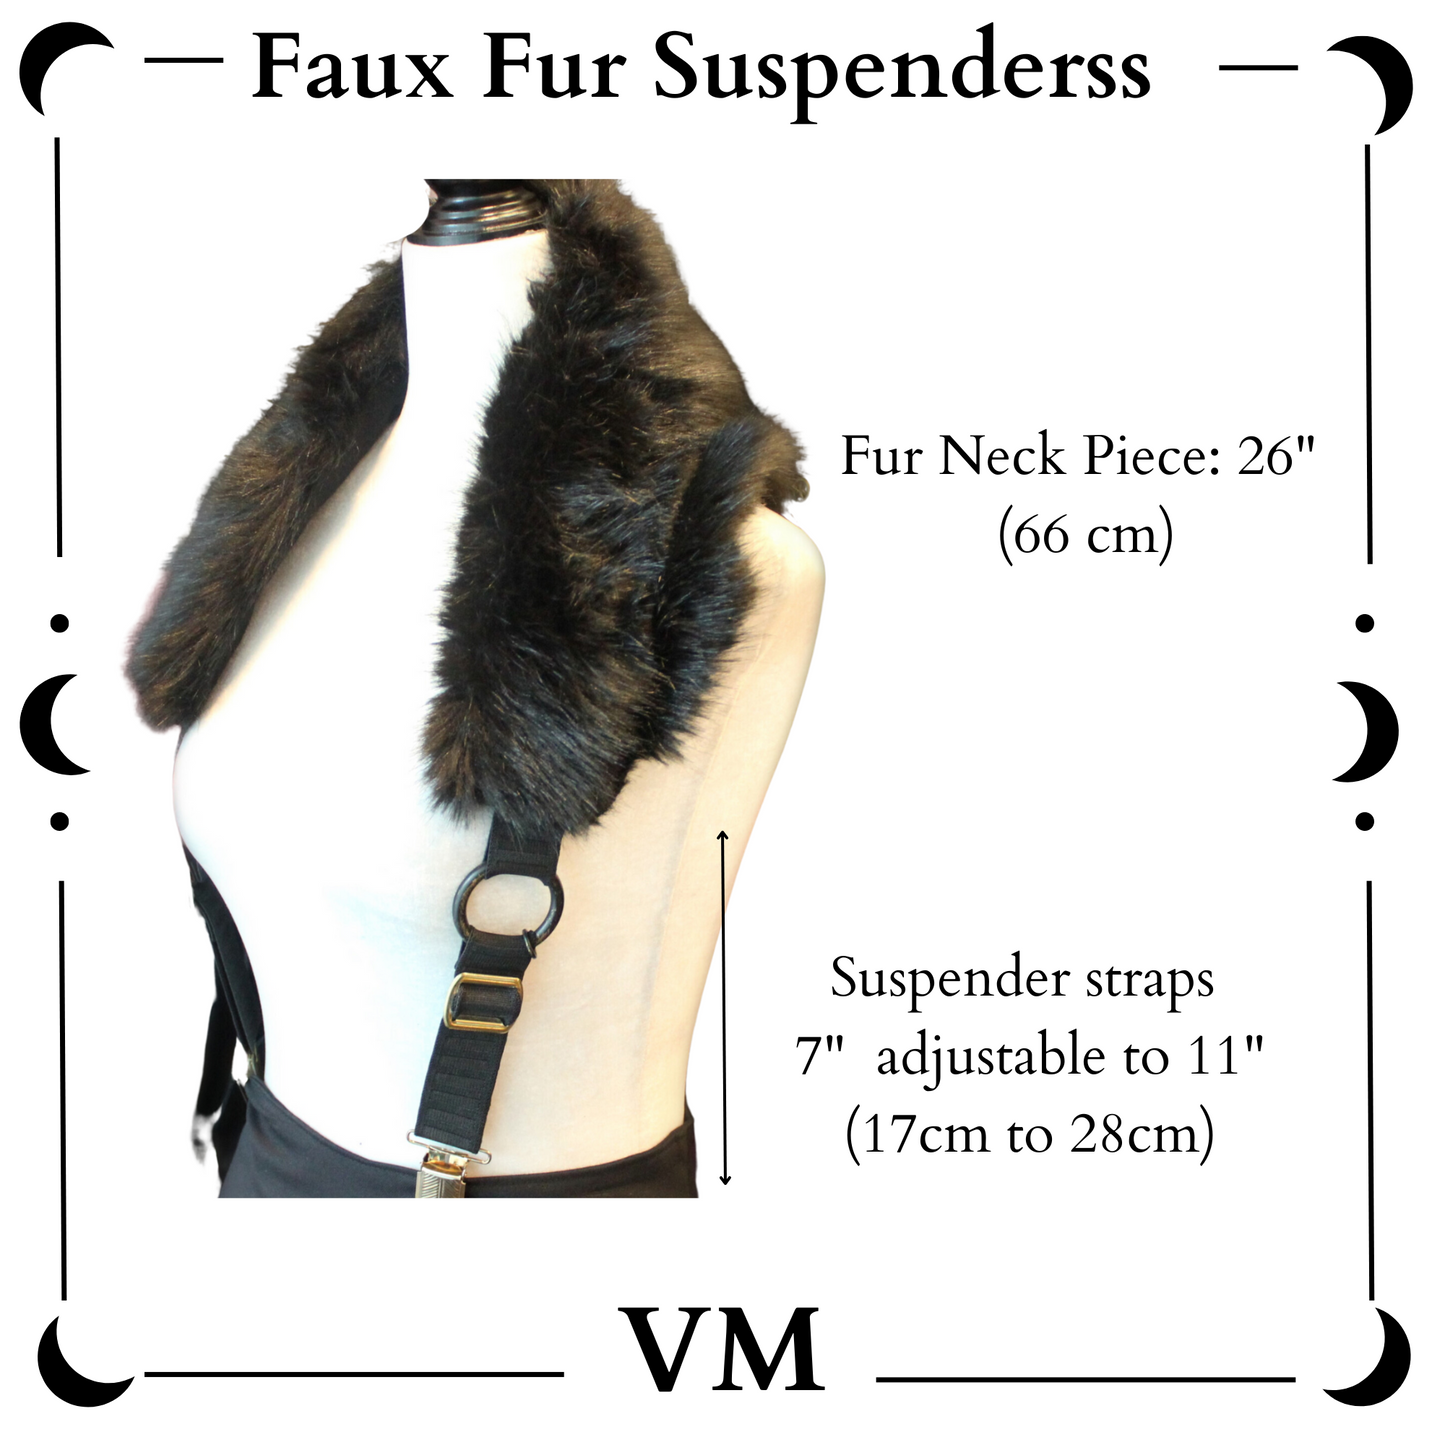 The VM Faux Fur Suspenders